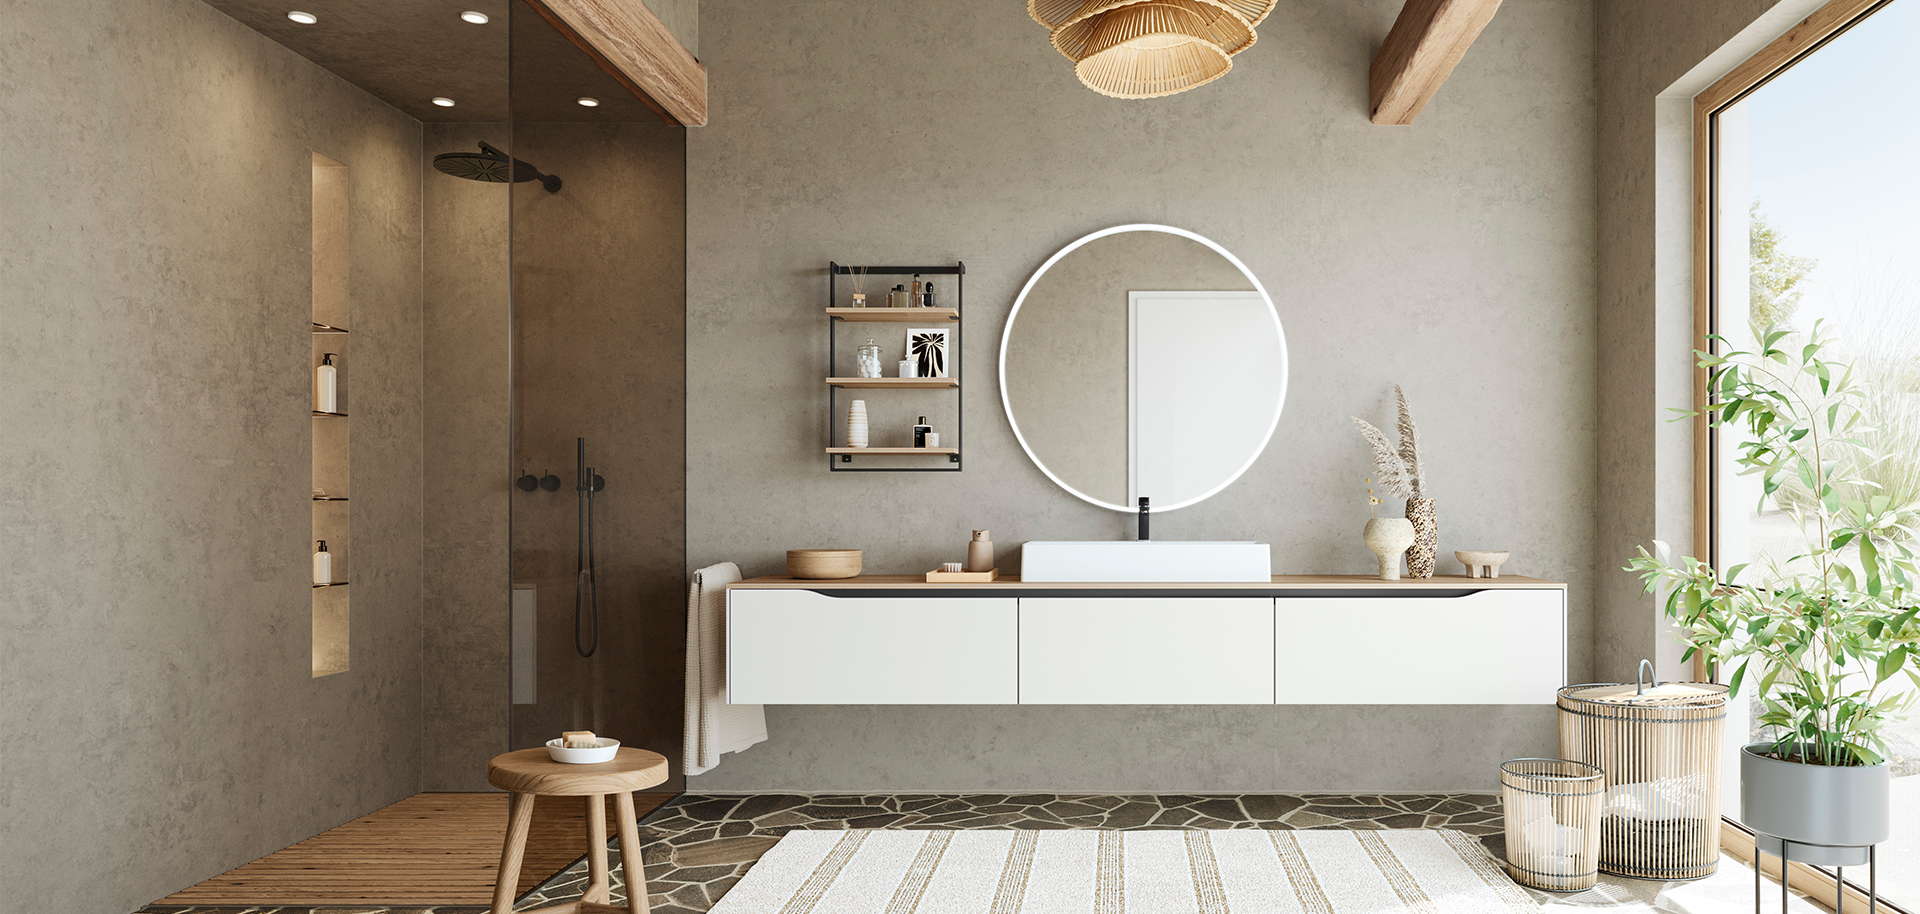 Minimalistisches Badezimmerdesign mit einem schwebenden Waschtisch, einem runden Spiegel und natürlichen Akzenten für einen ruhigen und stilvollen Raum.